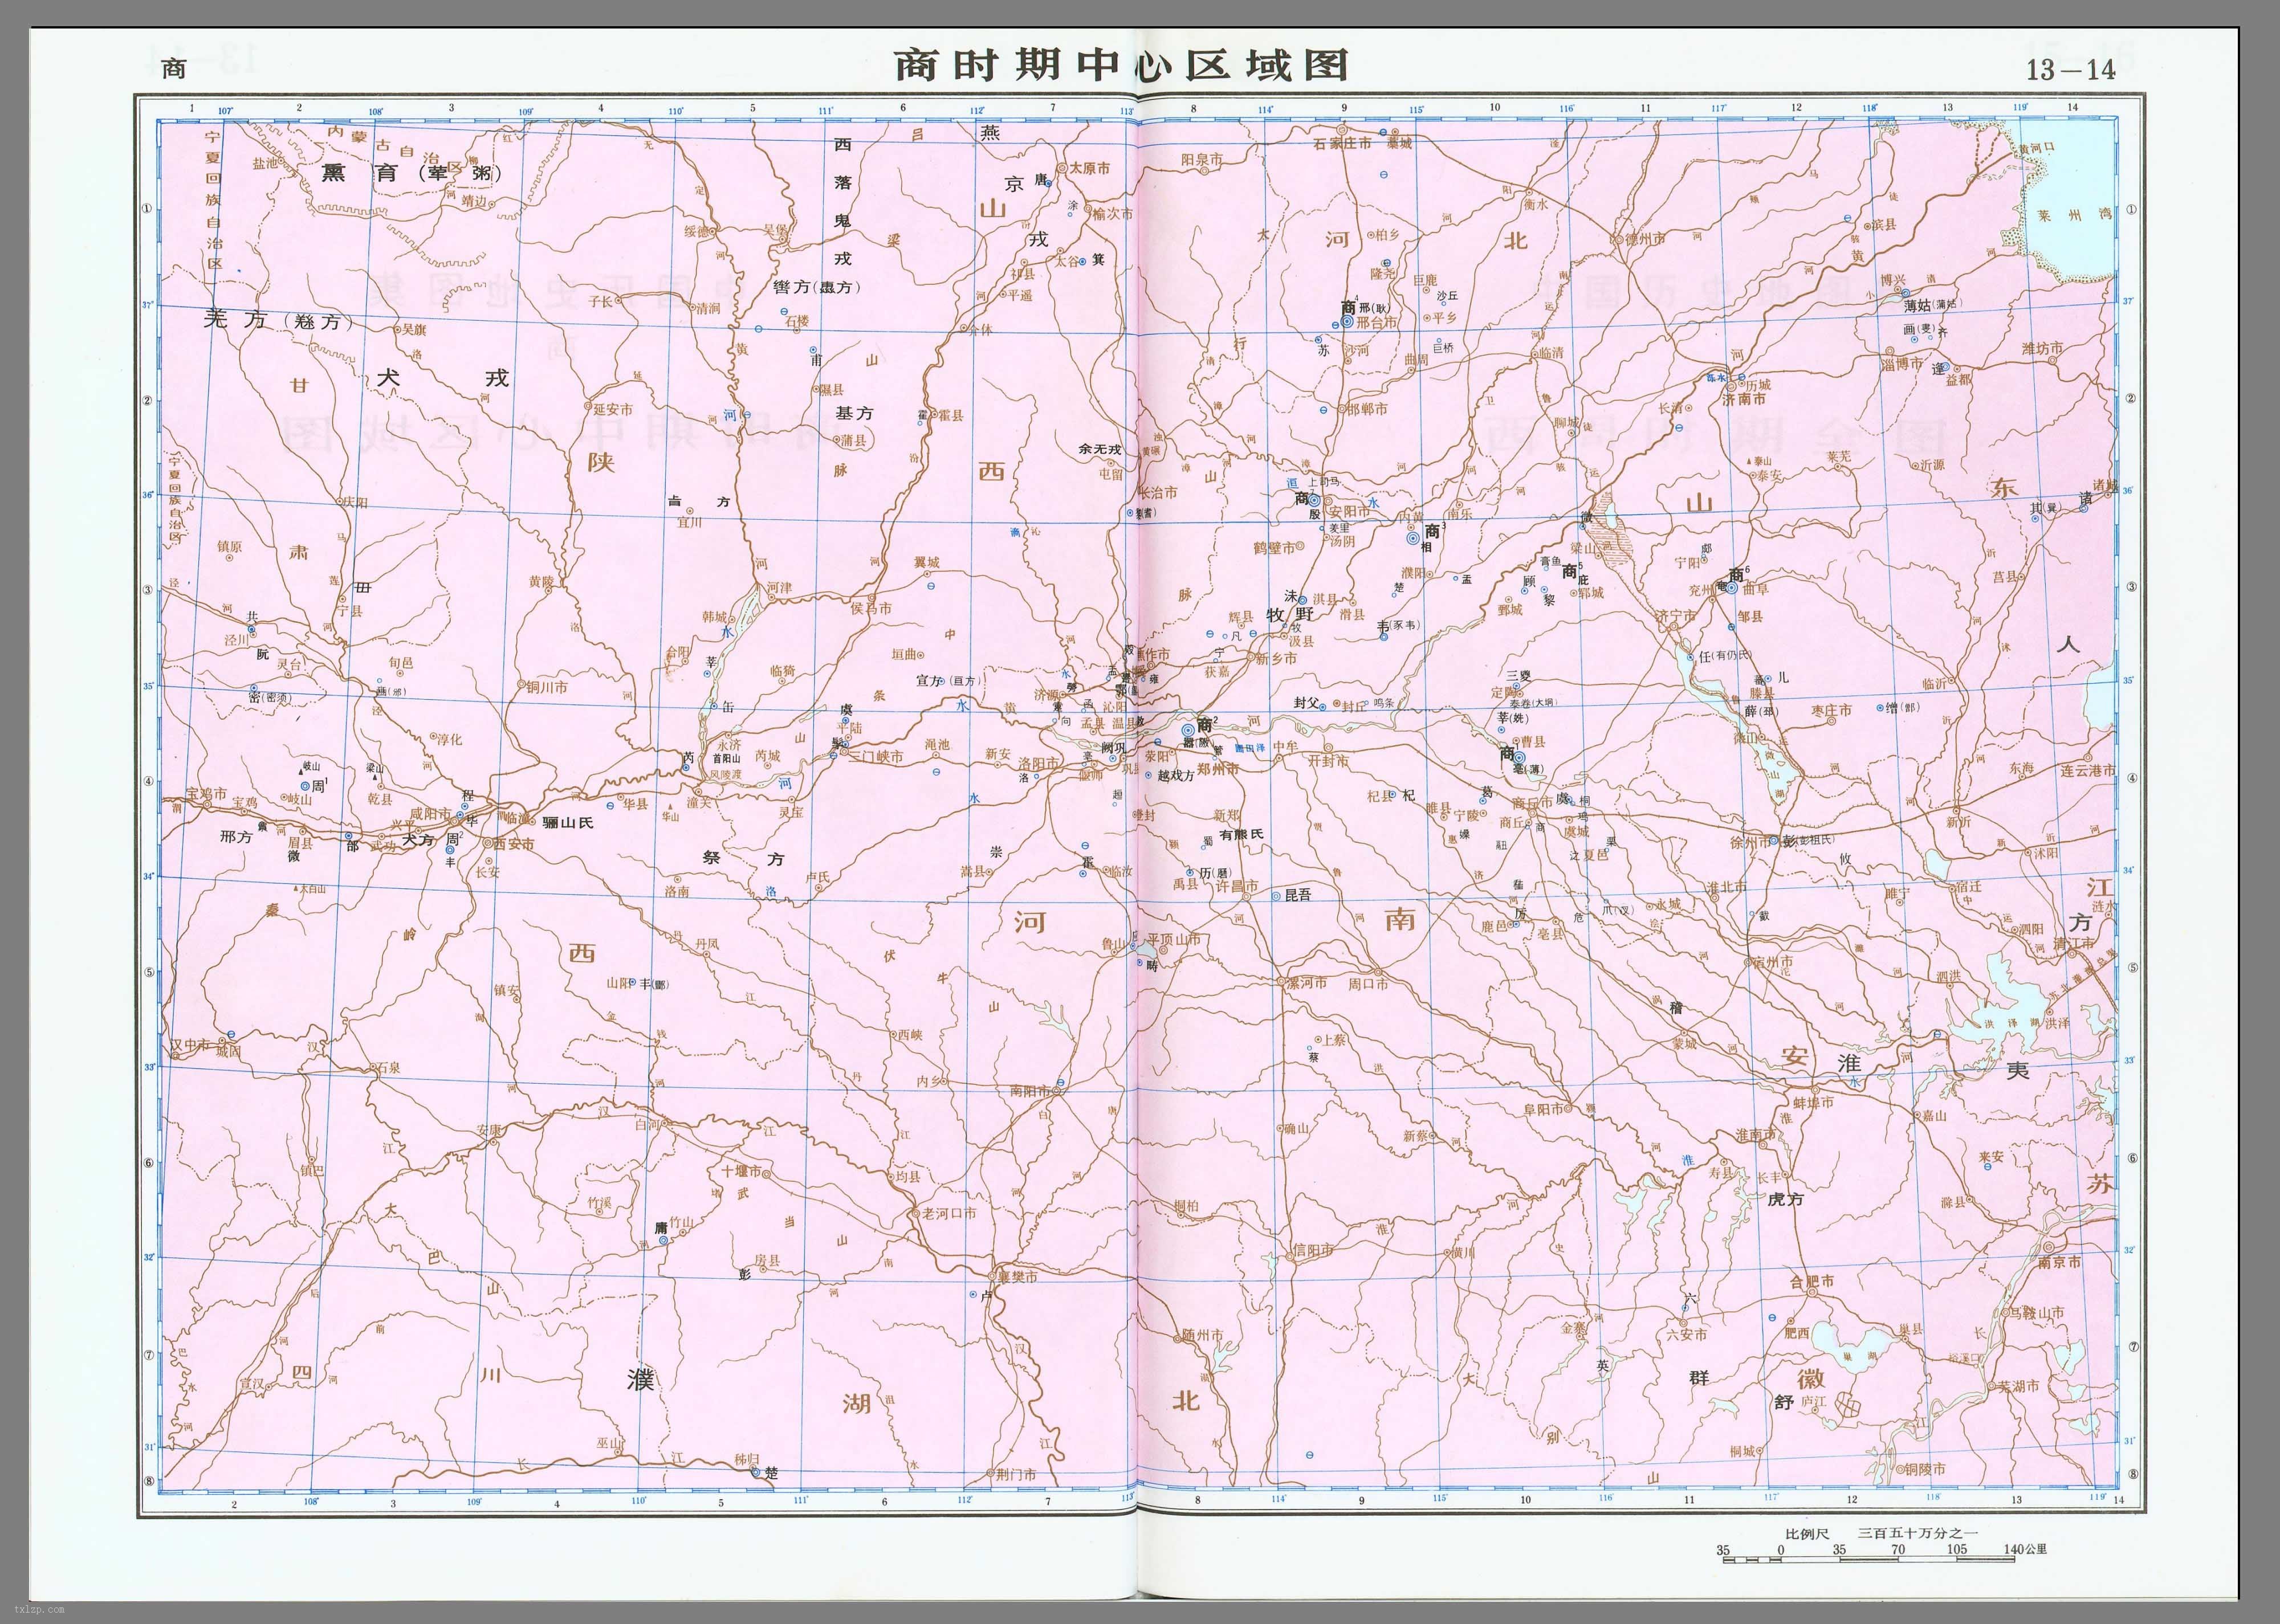 中国商朝时期中心区域地图全图高清版